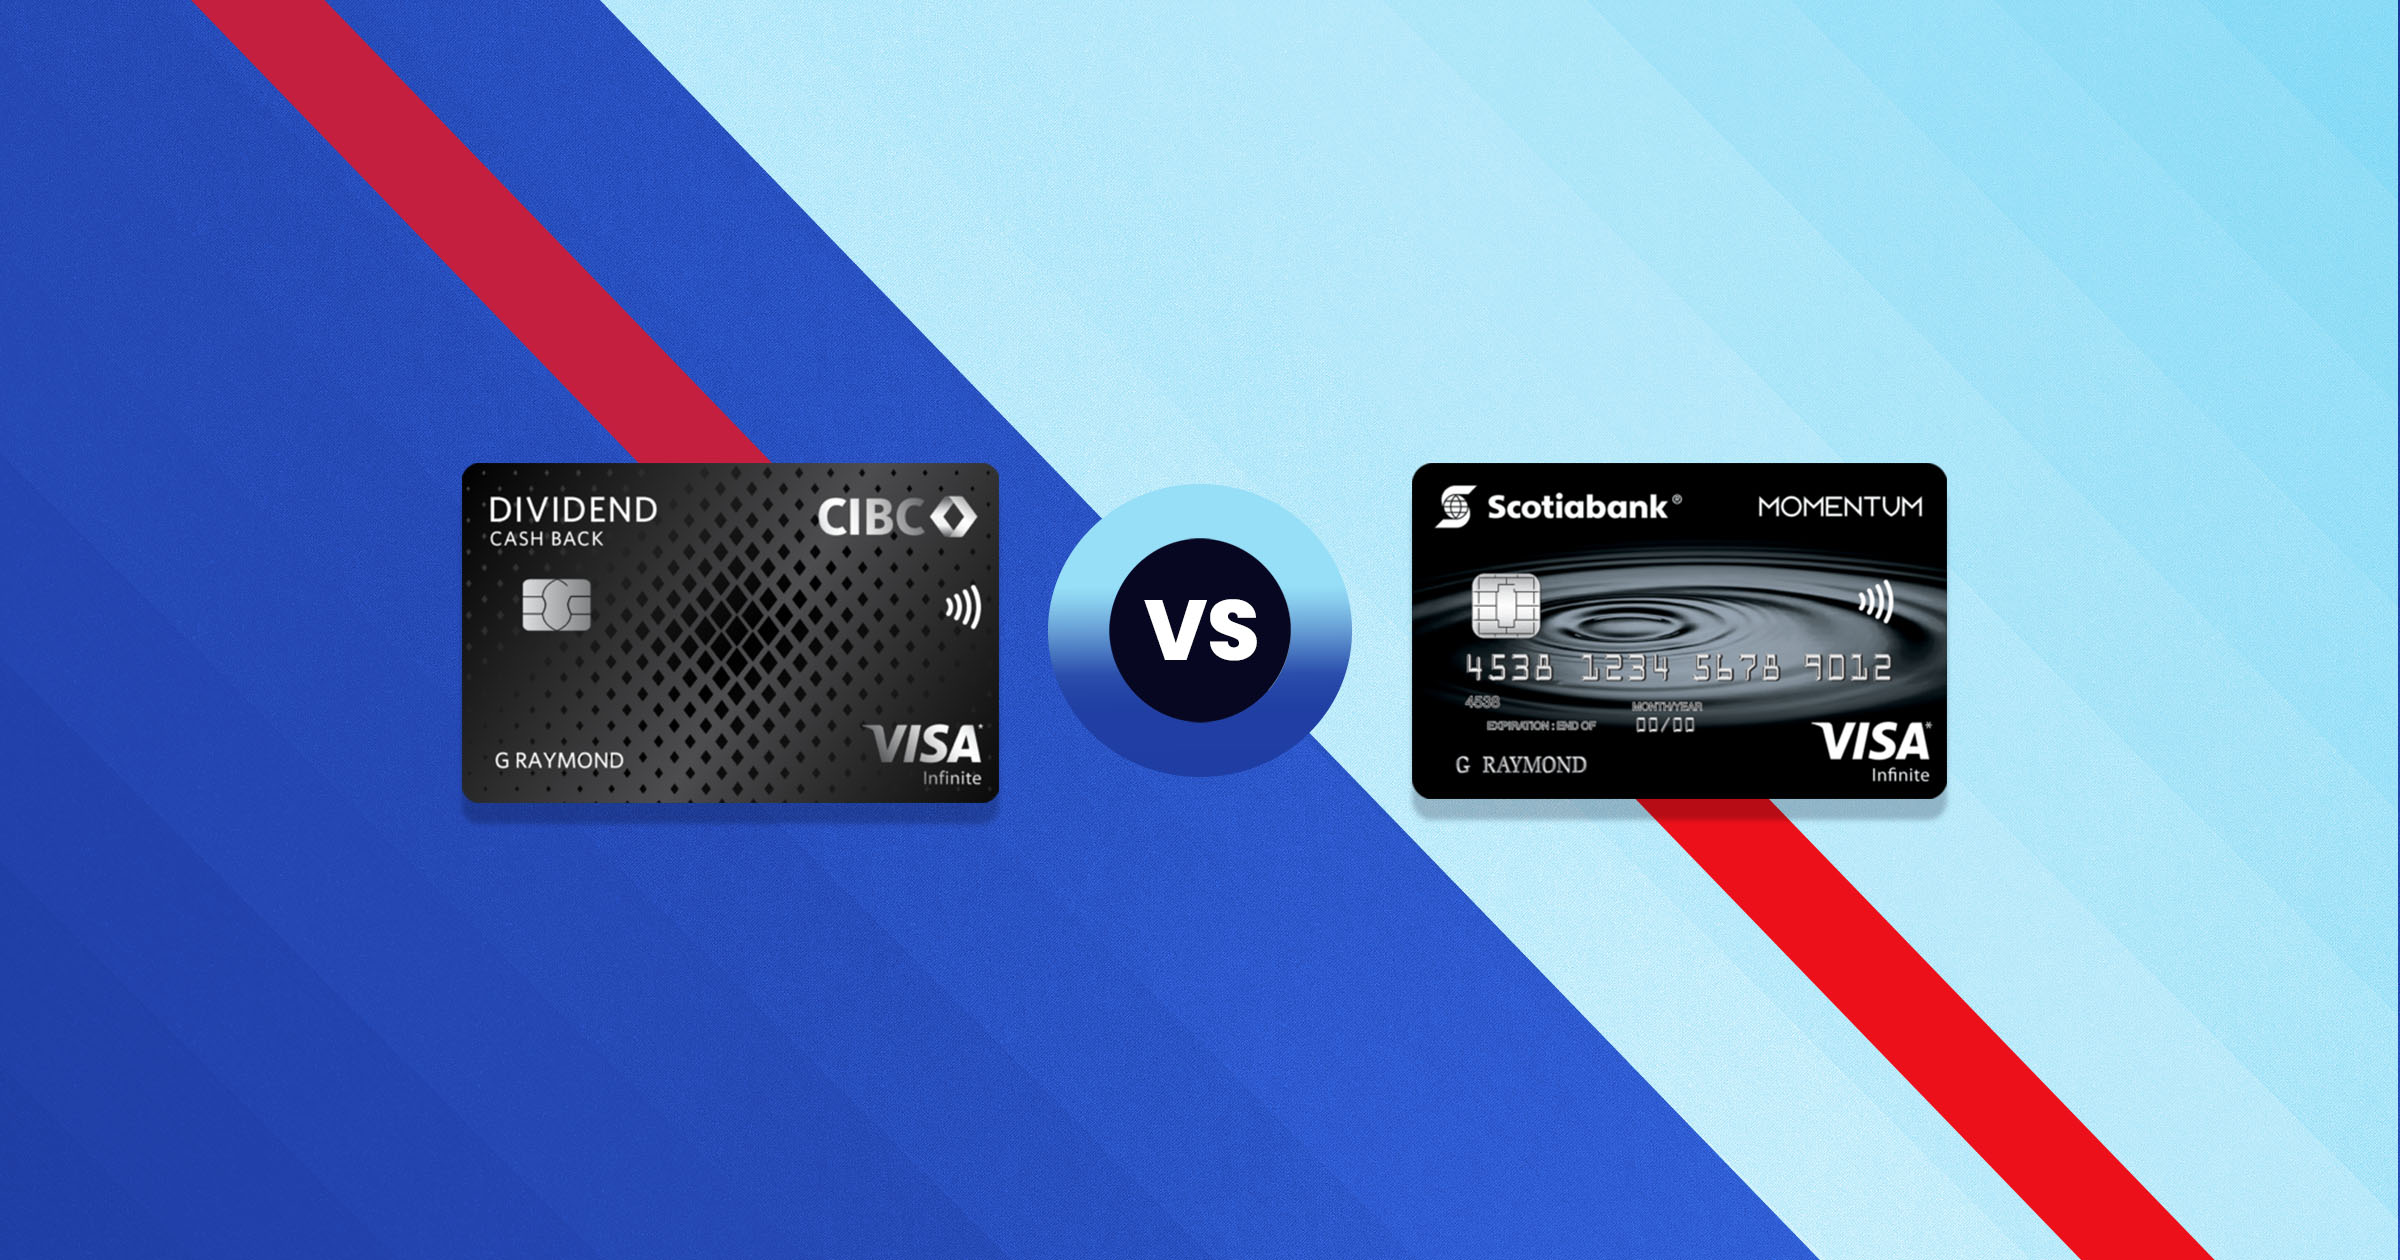 CIBC Dividend Visa Infinite Card vs Scotia Momentum VISA Infinite Card